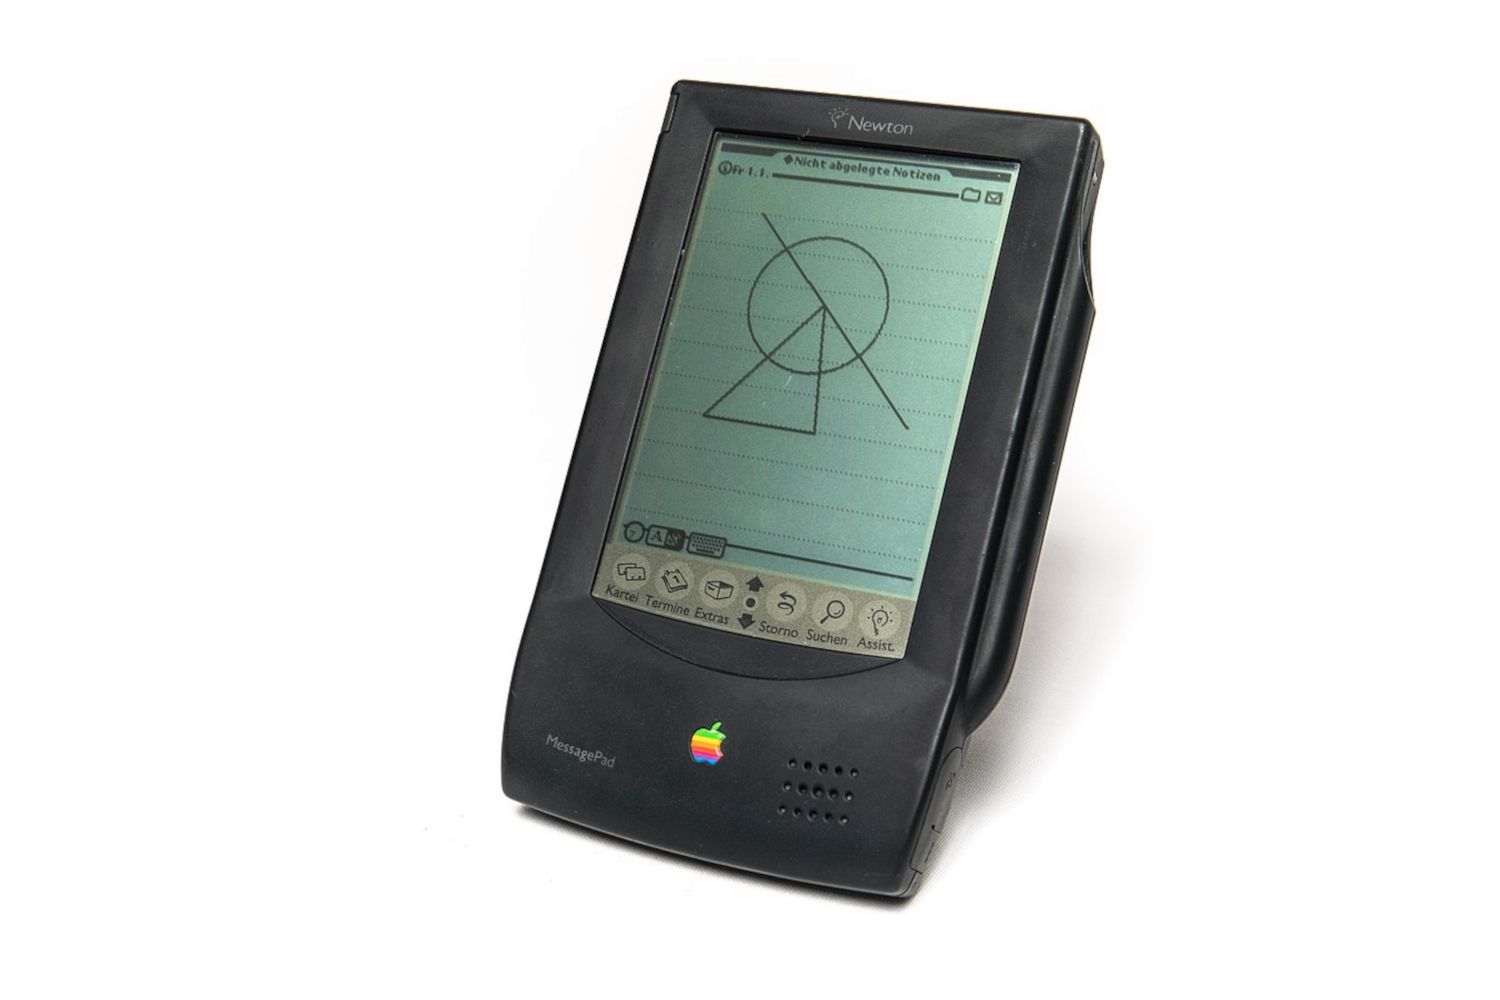 Originální Apple Newton při pohledu zepředu